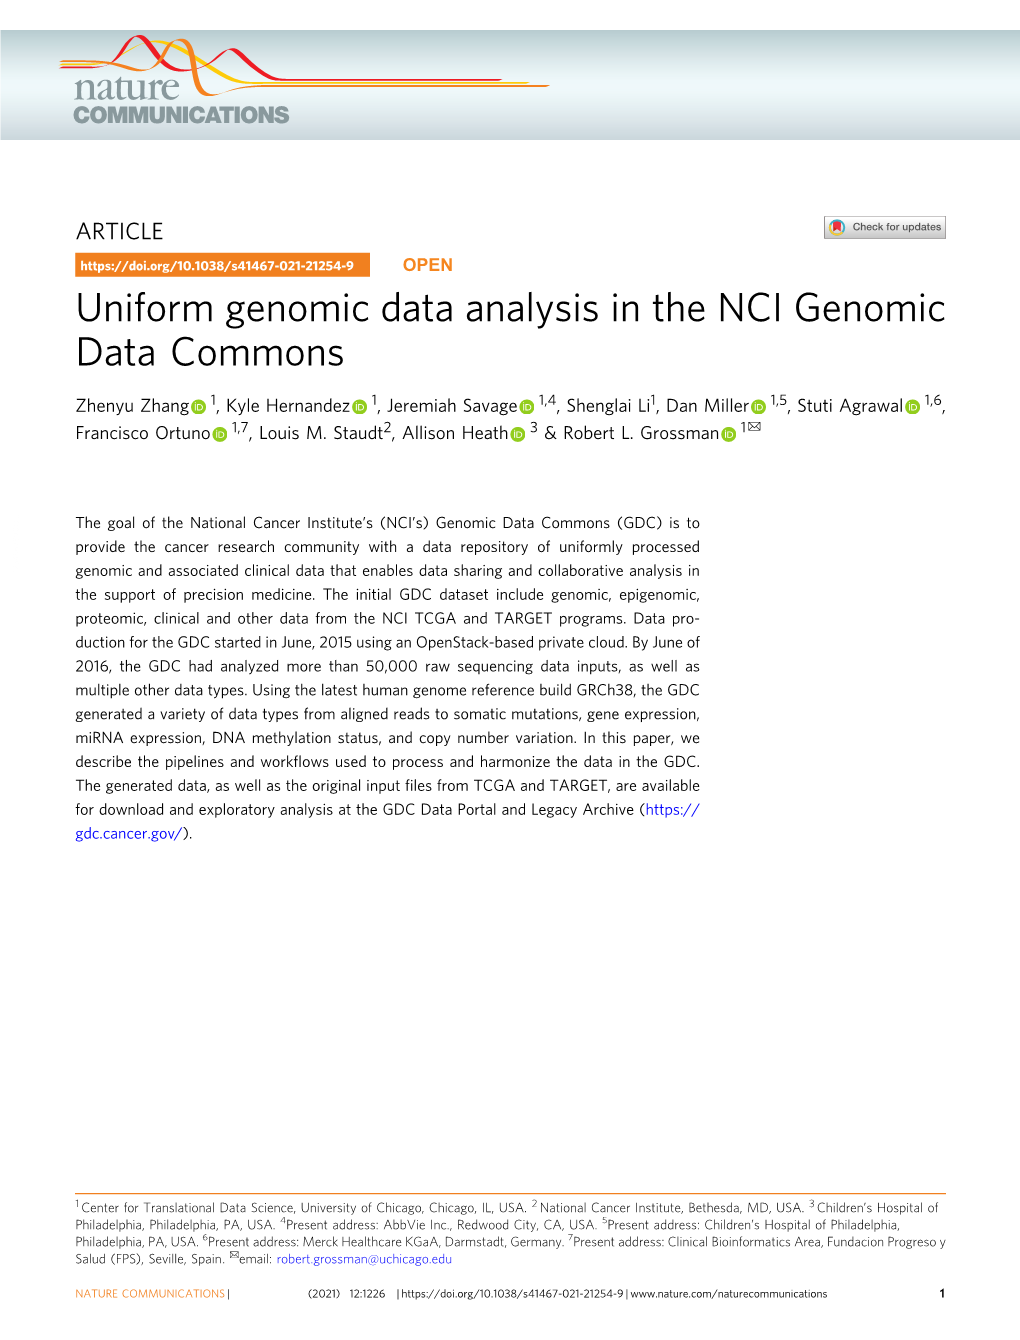 Uniform Genomic Data Analysis in the NCI Genomic Data Commons